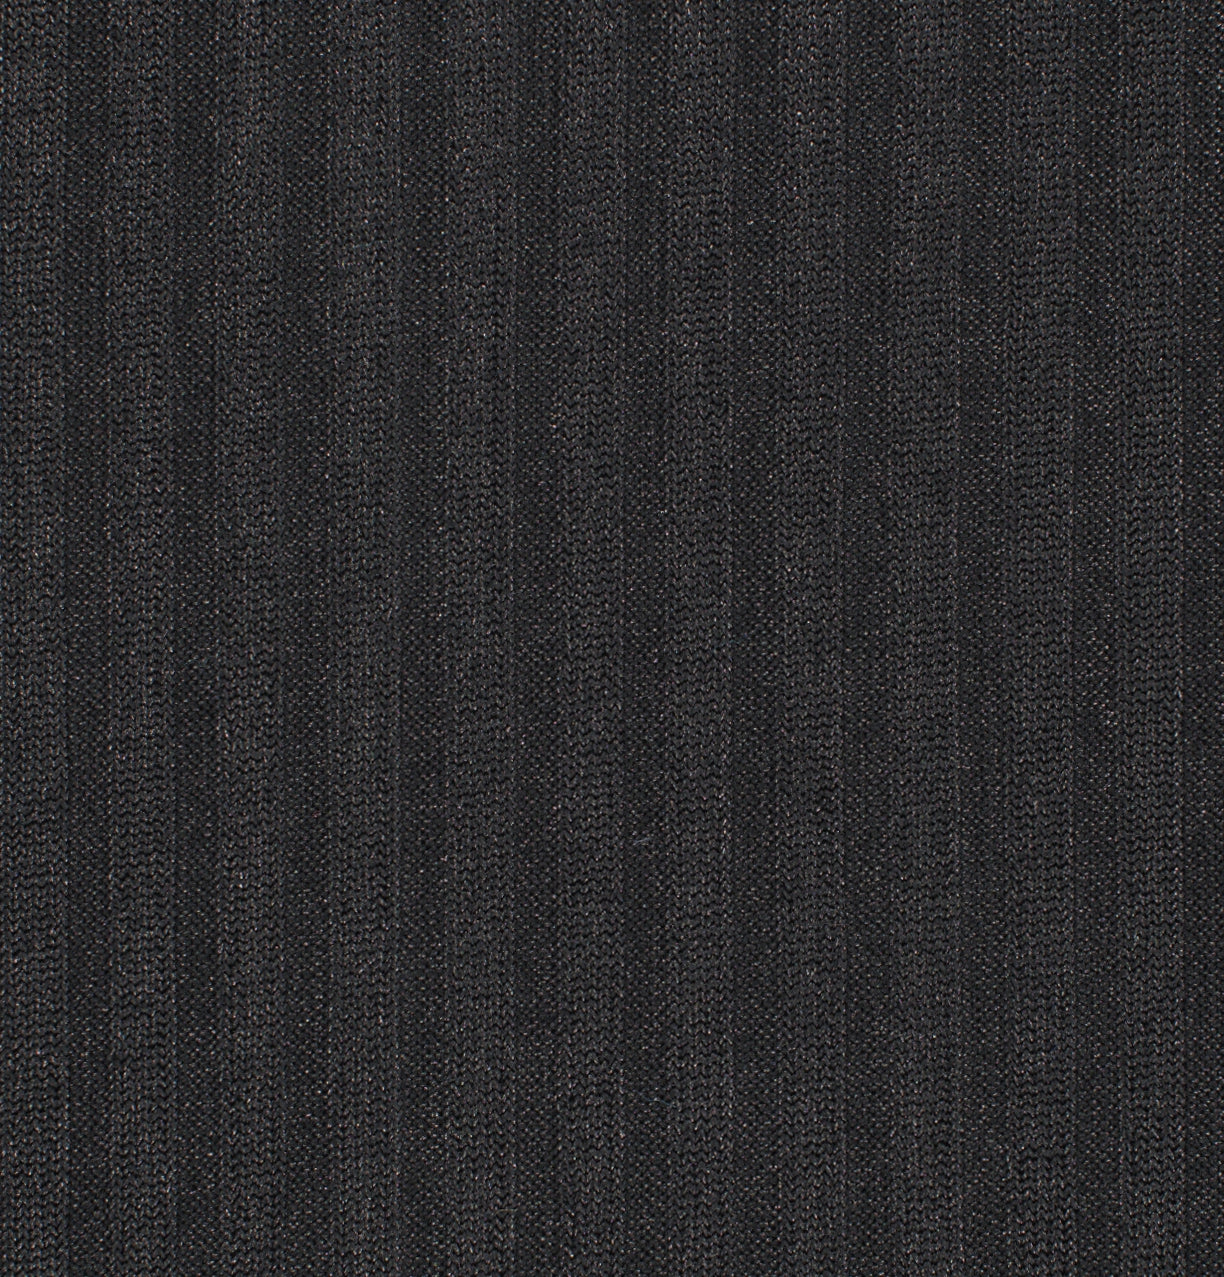 16025-01 Black, Silver Knit Rib Foil Plain Dyed Blend black blend foil knit plain dyed polyester rib silver spandex Foil, Rib - knit fabric - woven fabric - fabric company - fabric wholesale - fabric b2b - fabric factory - high quality fabric - hong kong fabric - fabric hk - acetate fabric - cotton fabric - linen fabric - metallic fabric - nylon fabric - polyester fabric - spandex fabric - chun wing hing - cwh hk - fabric worldwide ship - 針織布 - 梳織布 - 布料公司- 布料批發 - 香港布料 - 秦榮興